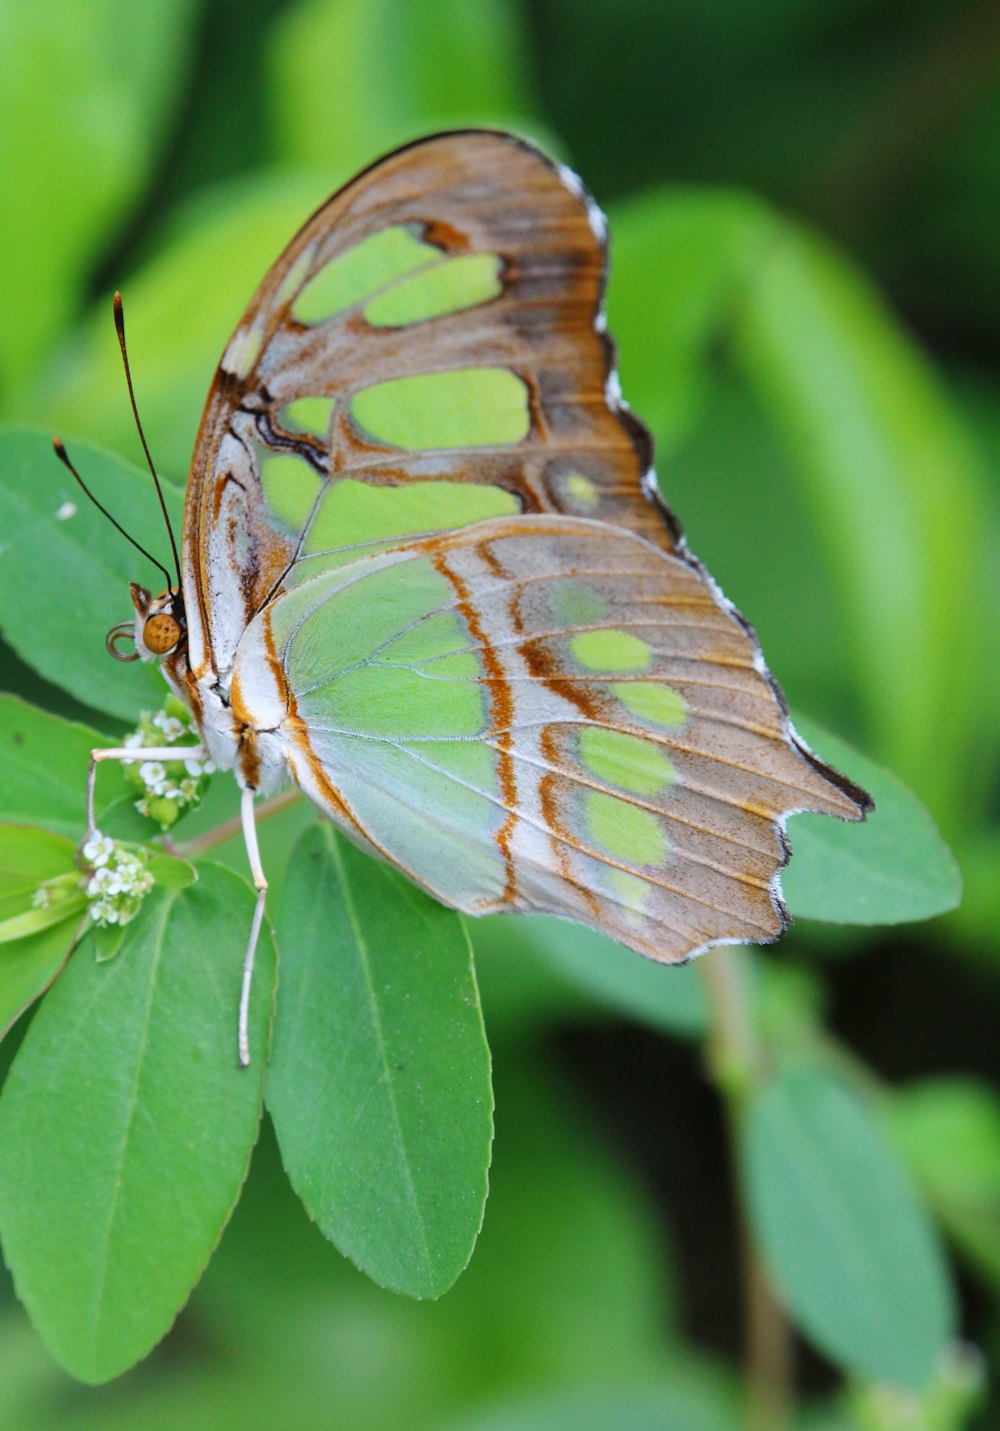 Una mariposa marrón y blanca sentada encima de una hoja verde